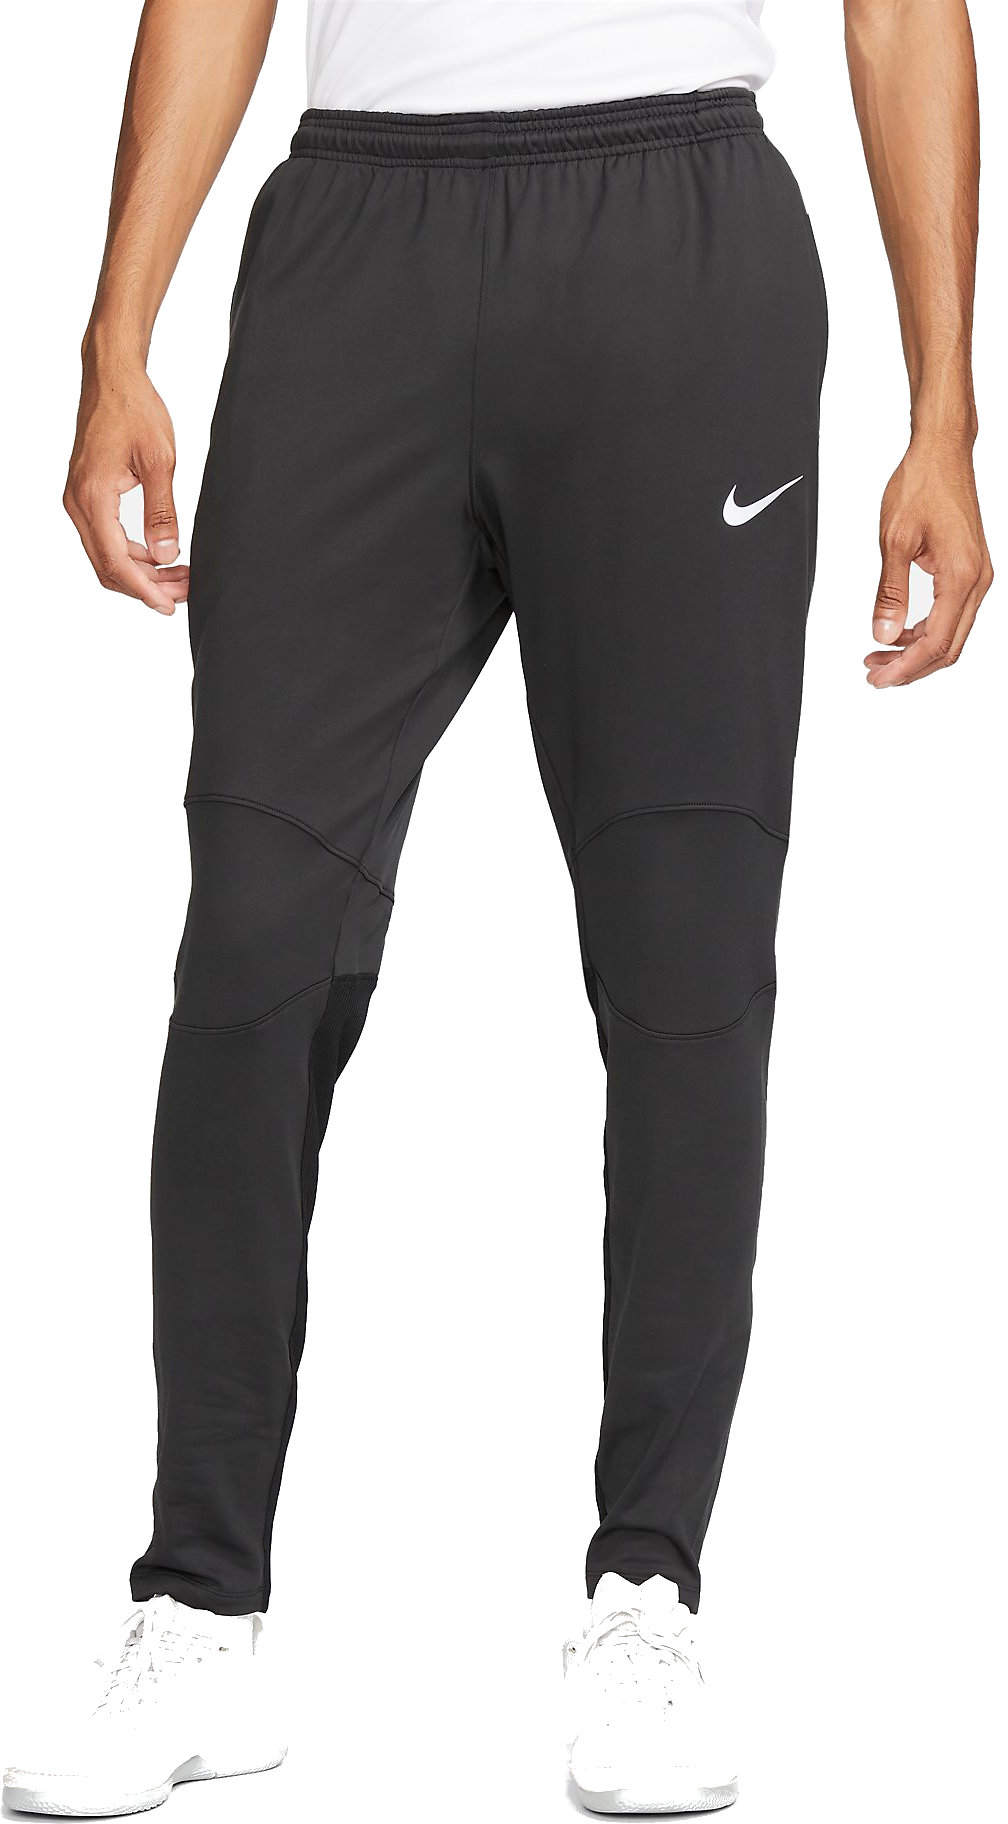 Pánské fotbalové kalhoty Nike Therma-FIT Stirke Winter Warrior